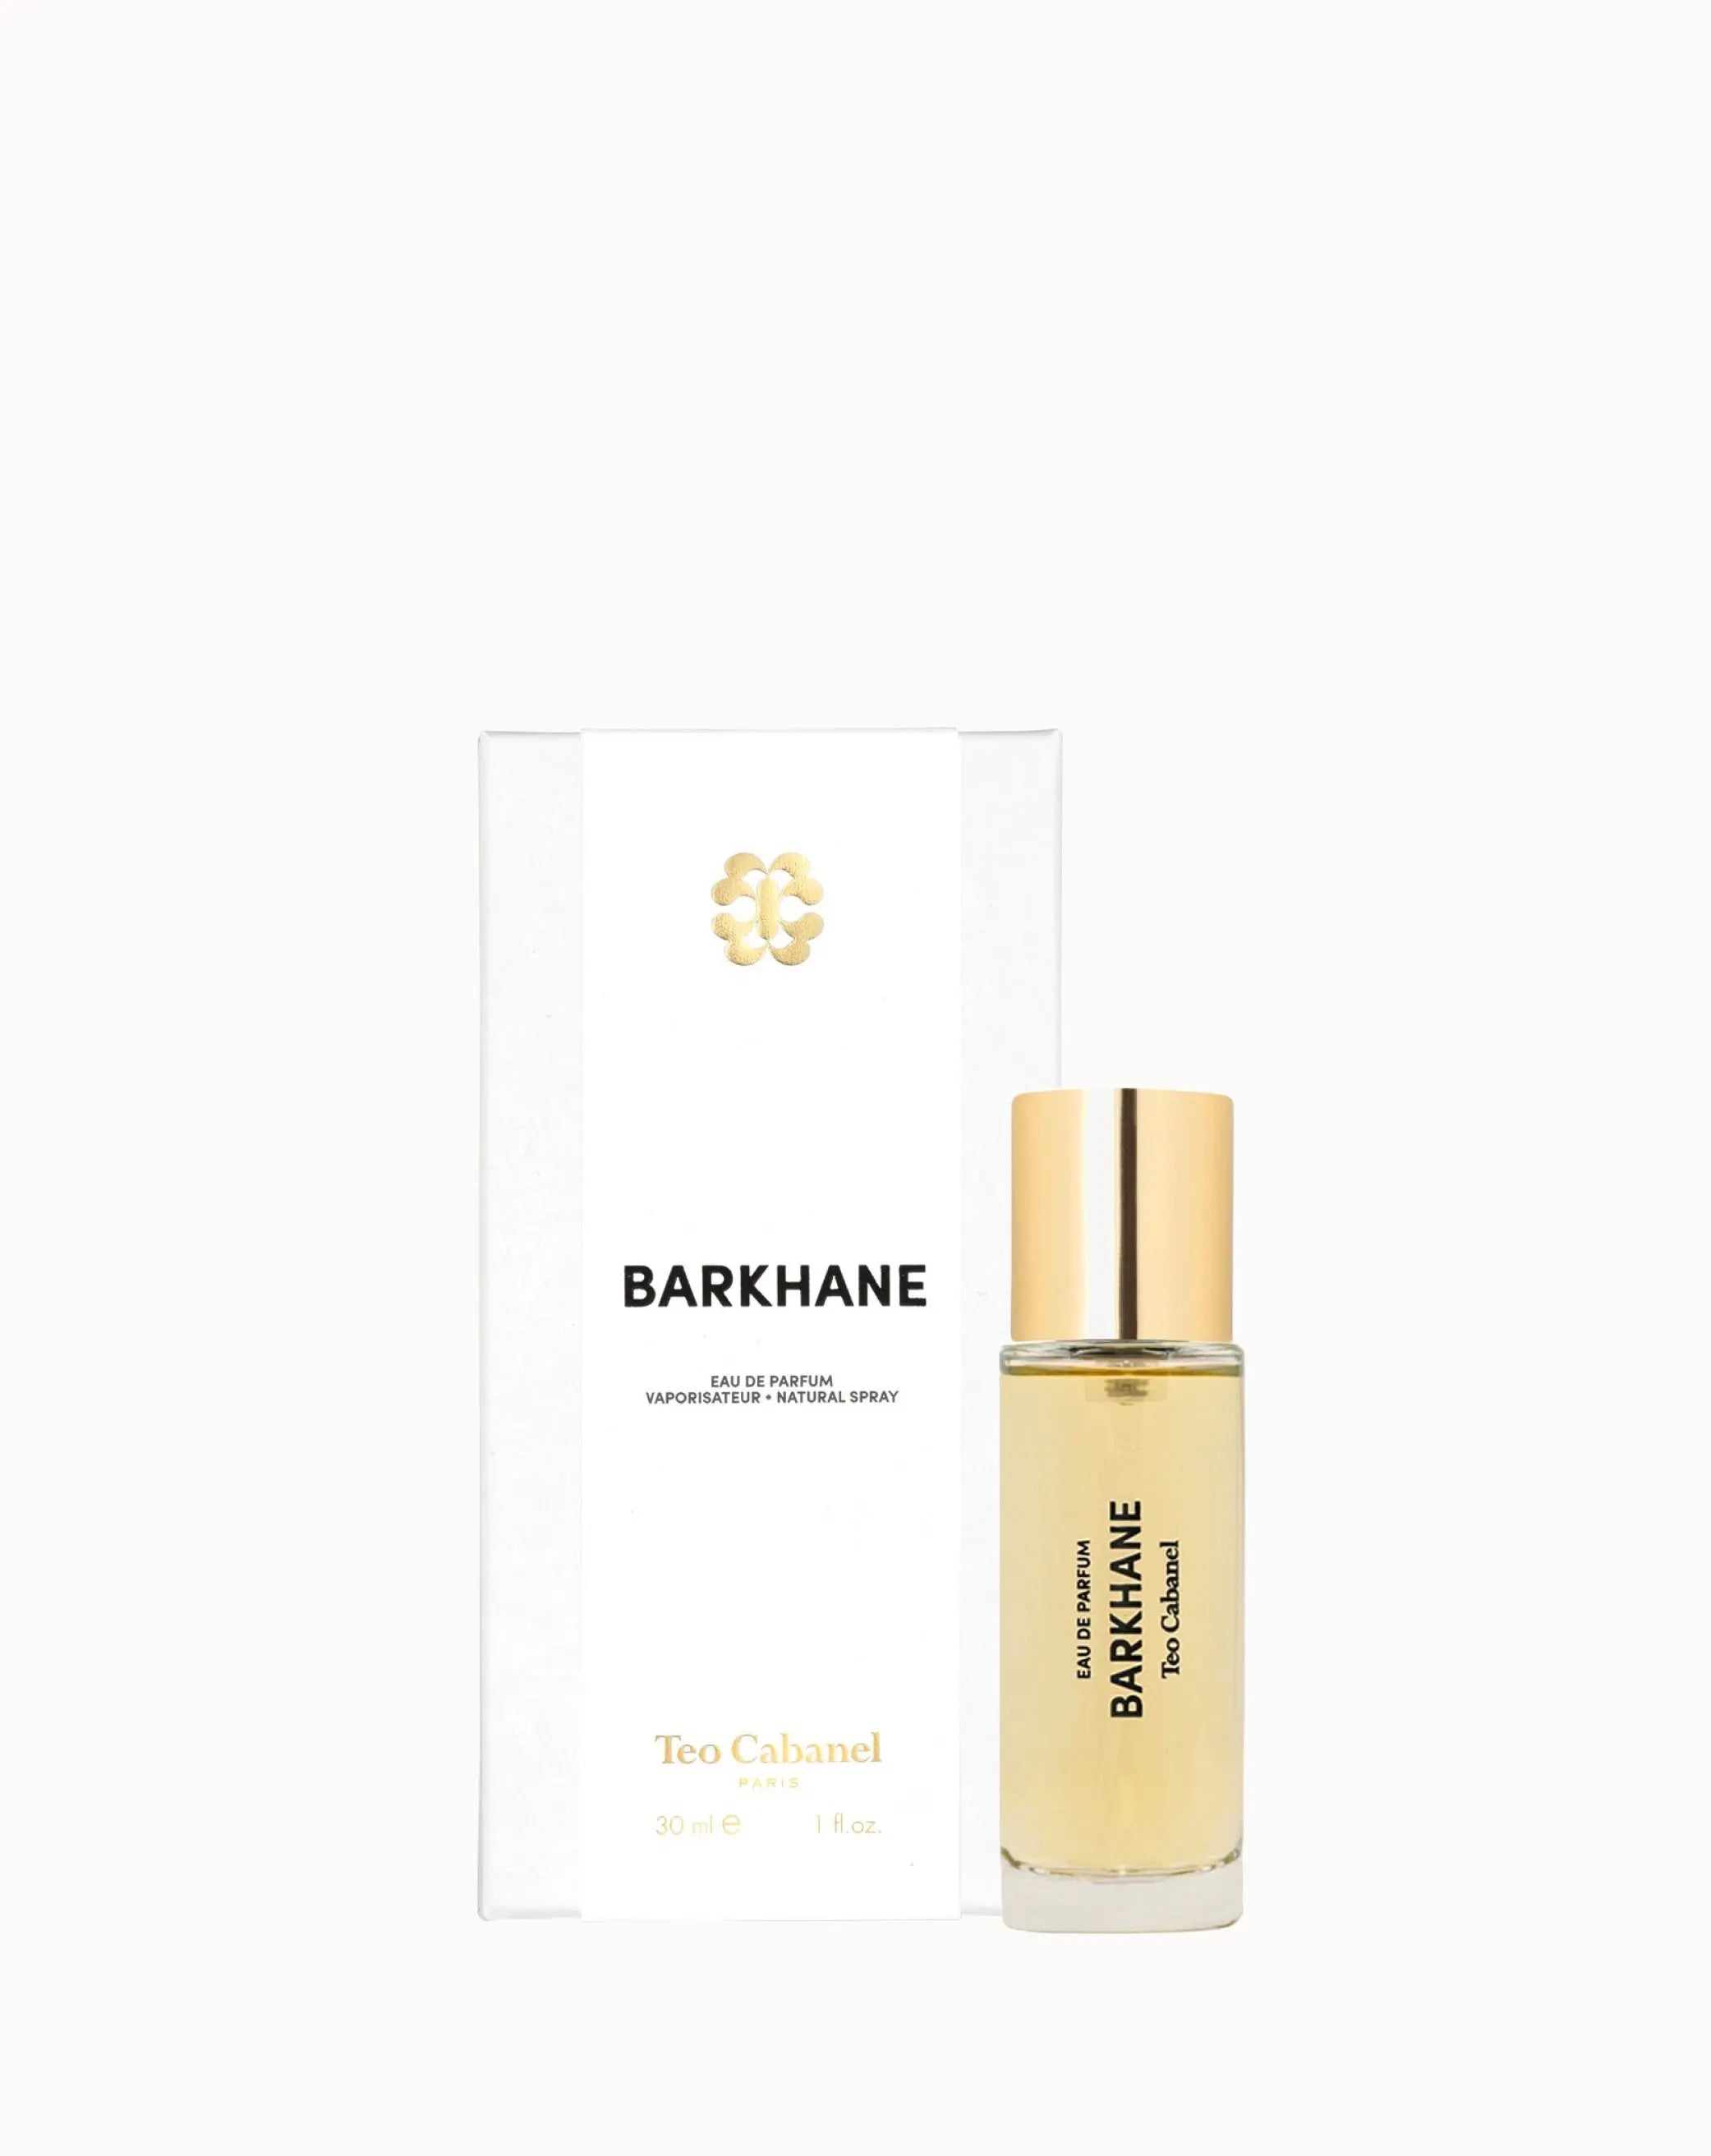 Barkhane Fragrance – Teo Cabanel